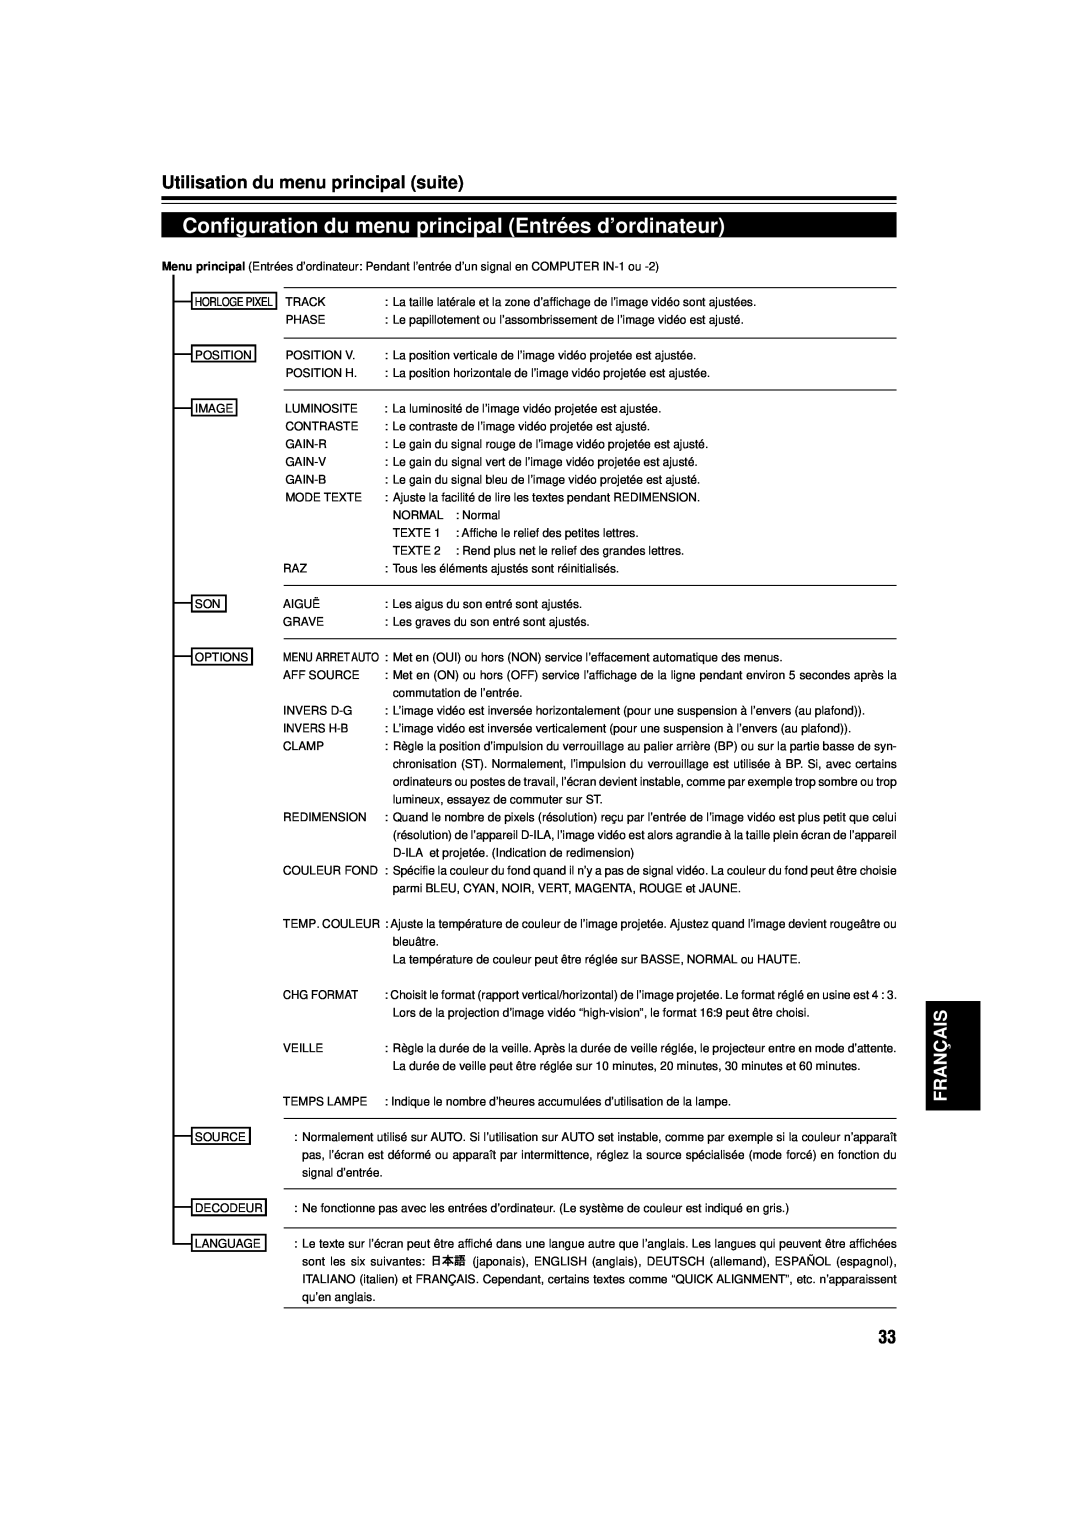 JVC DLA-M15U manual Configuration du menu principal Entrées d’ordinateur, Utilisation du menu principal suite, Français 